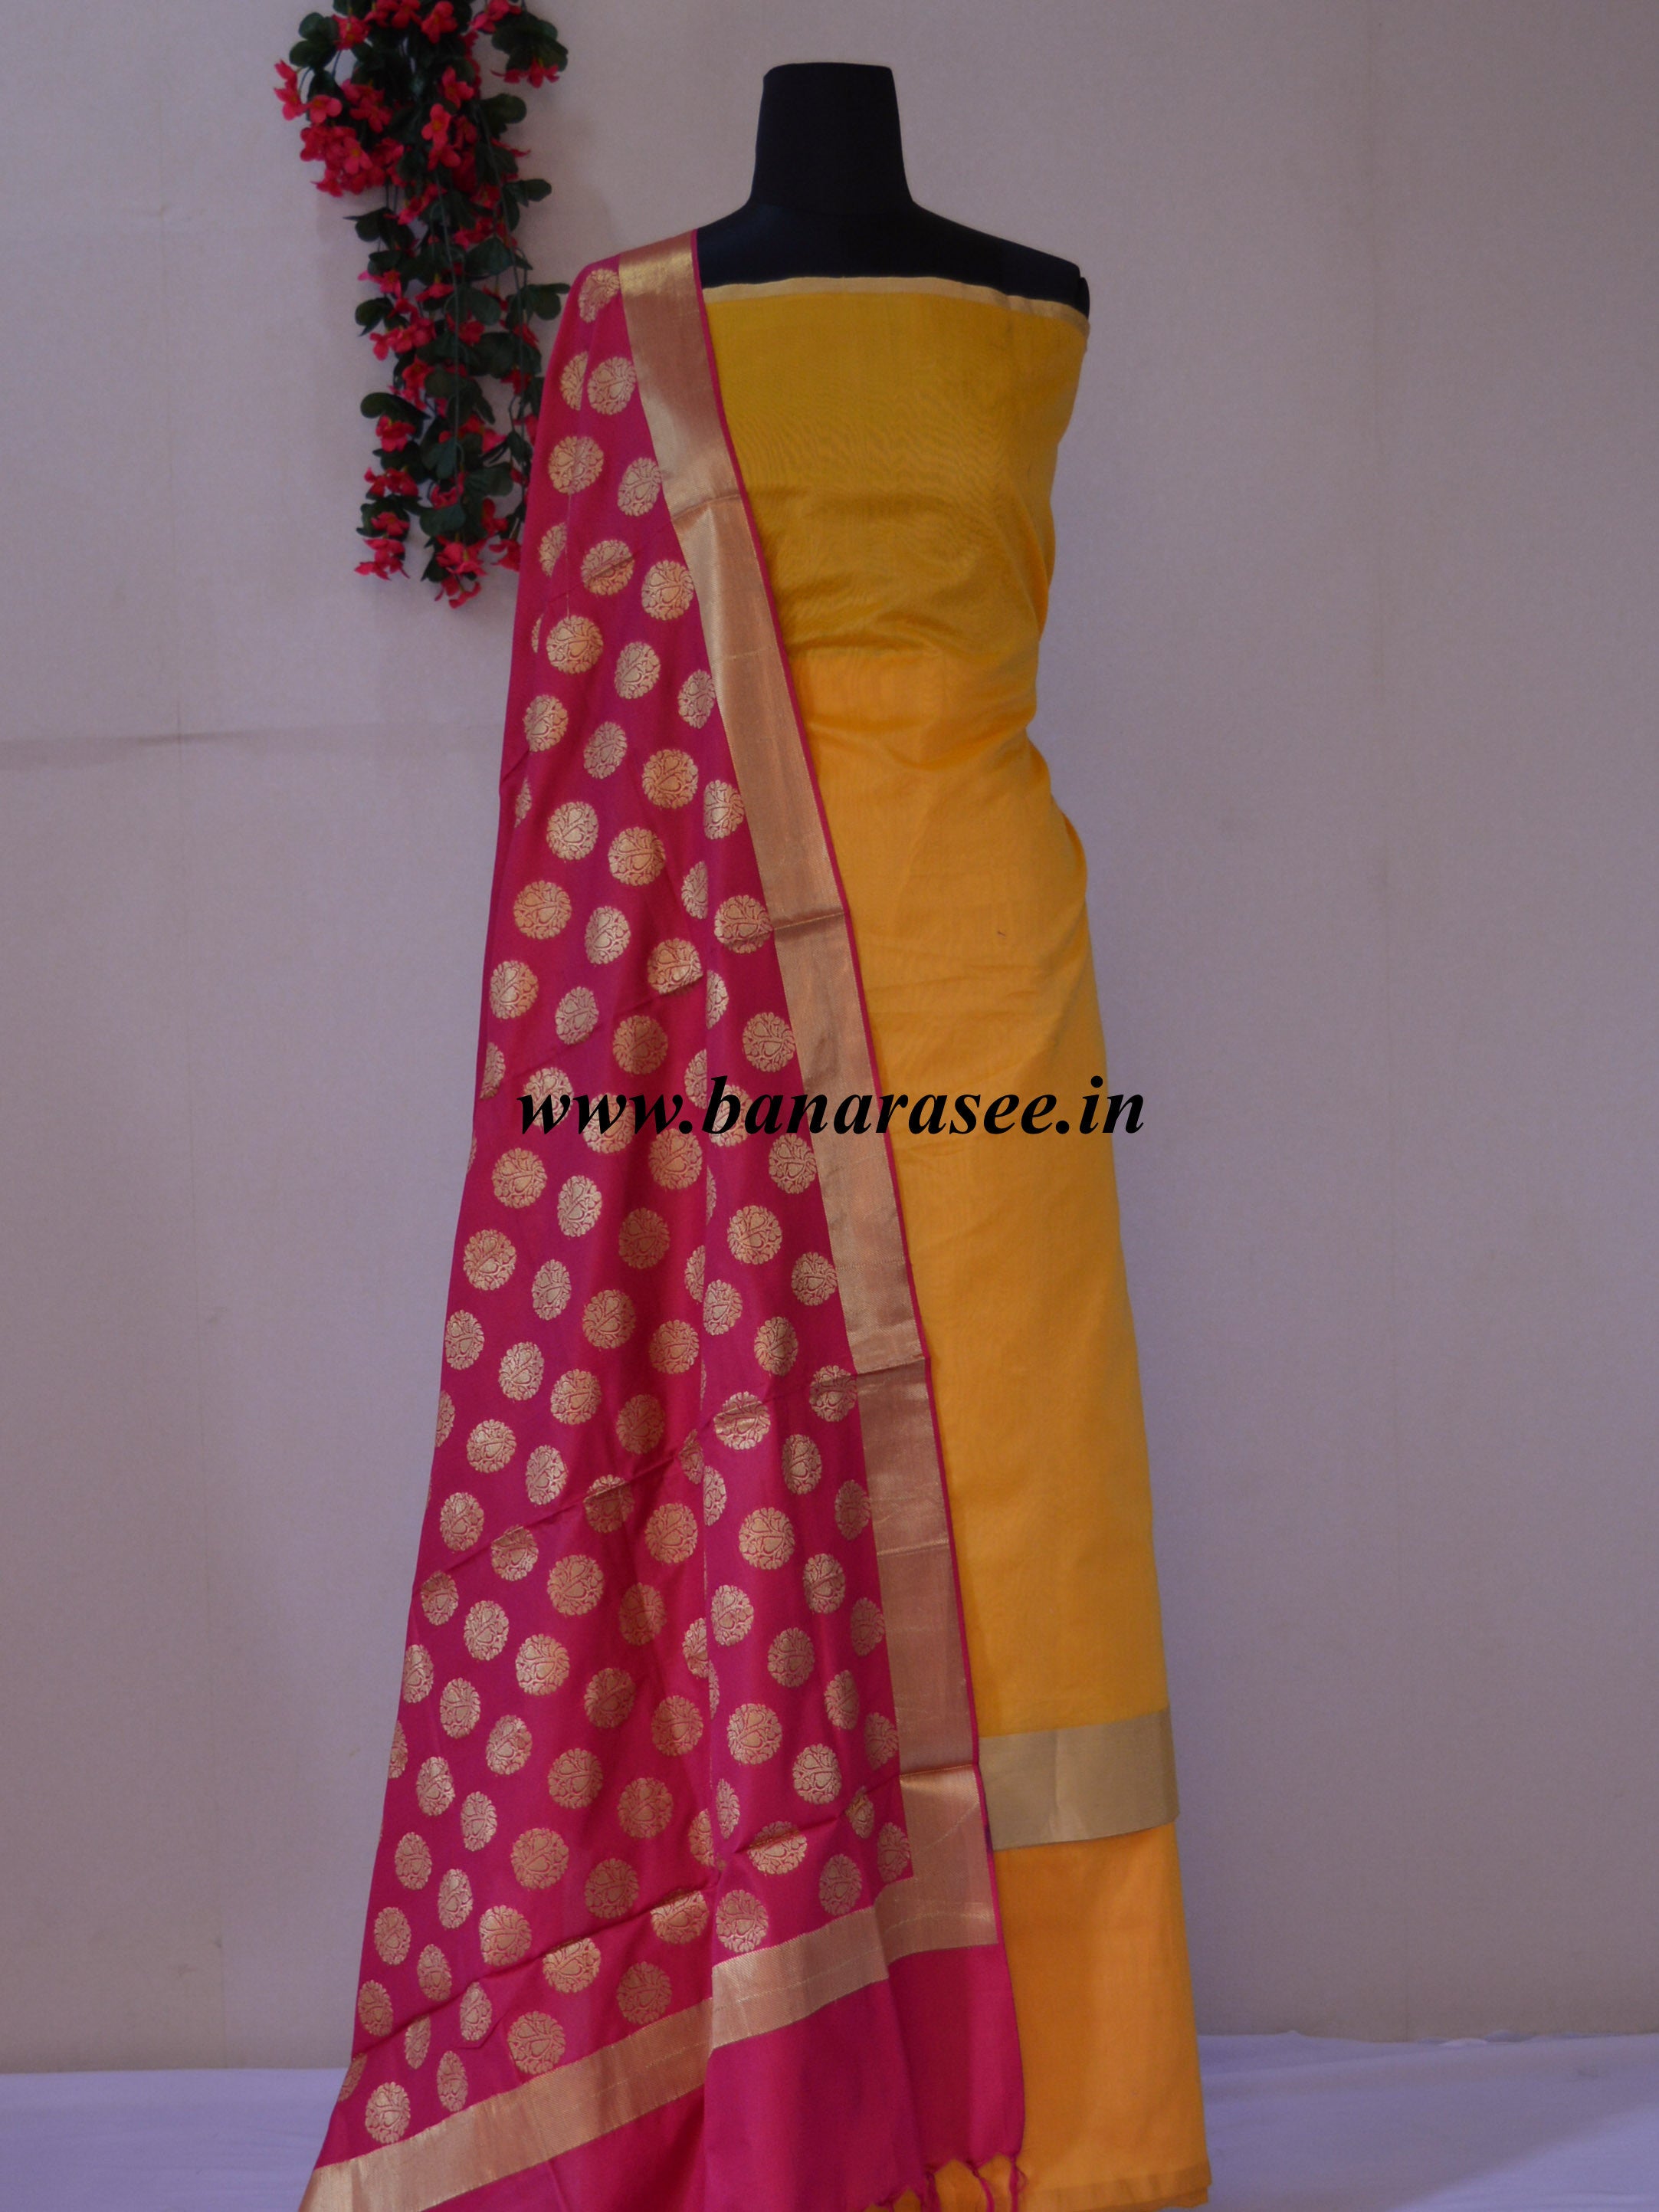 Banarasi Chanderi Cotton Salwar Kameez Fabric With Contrast Pink Dupatta-Yellow